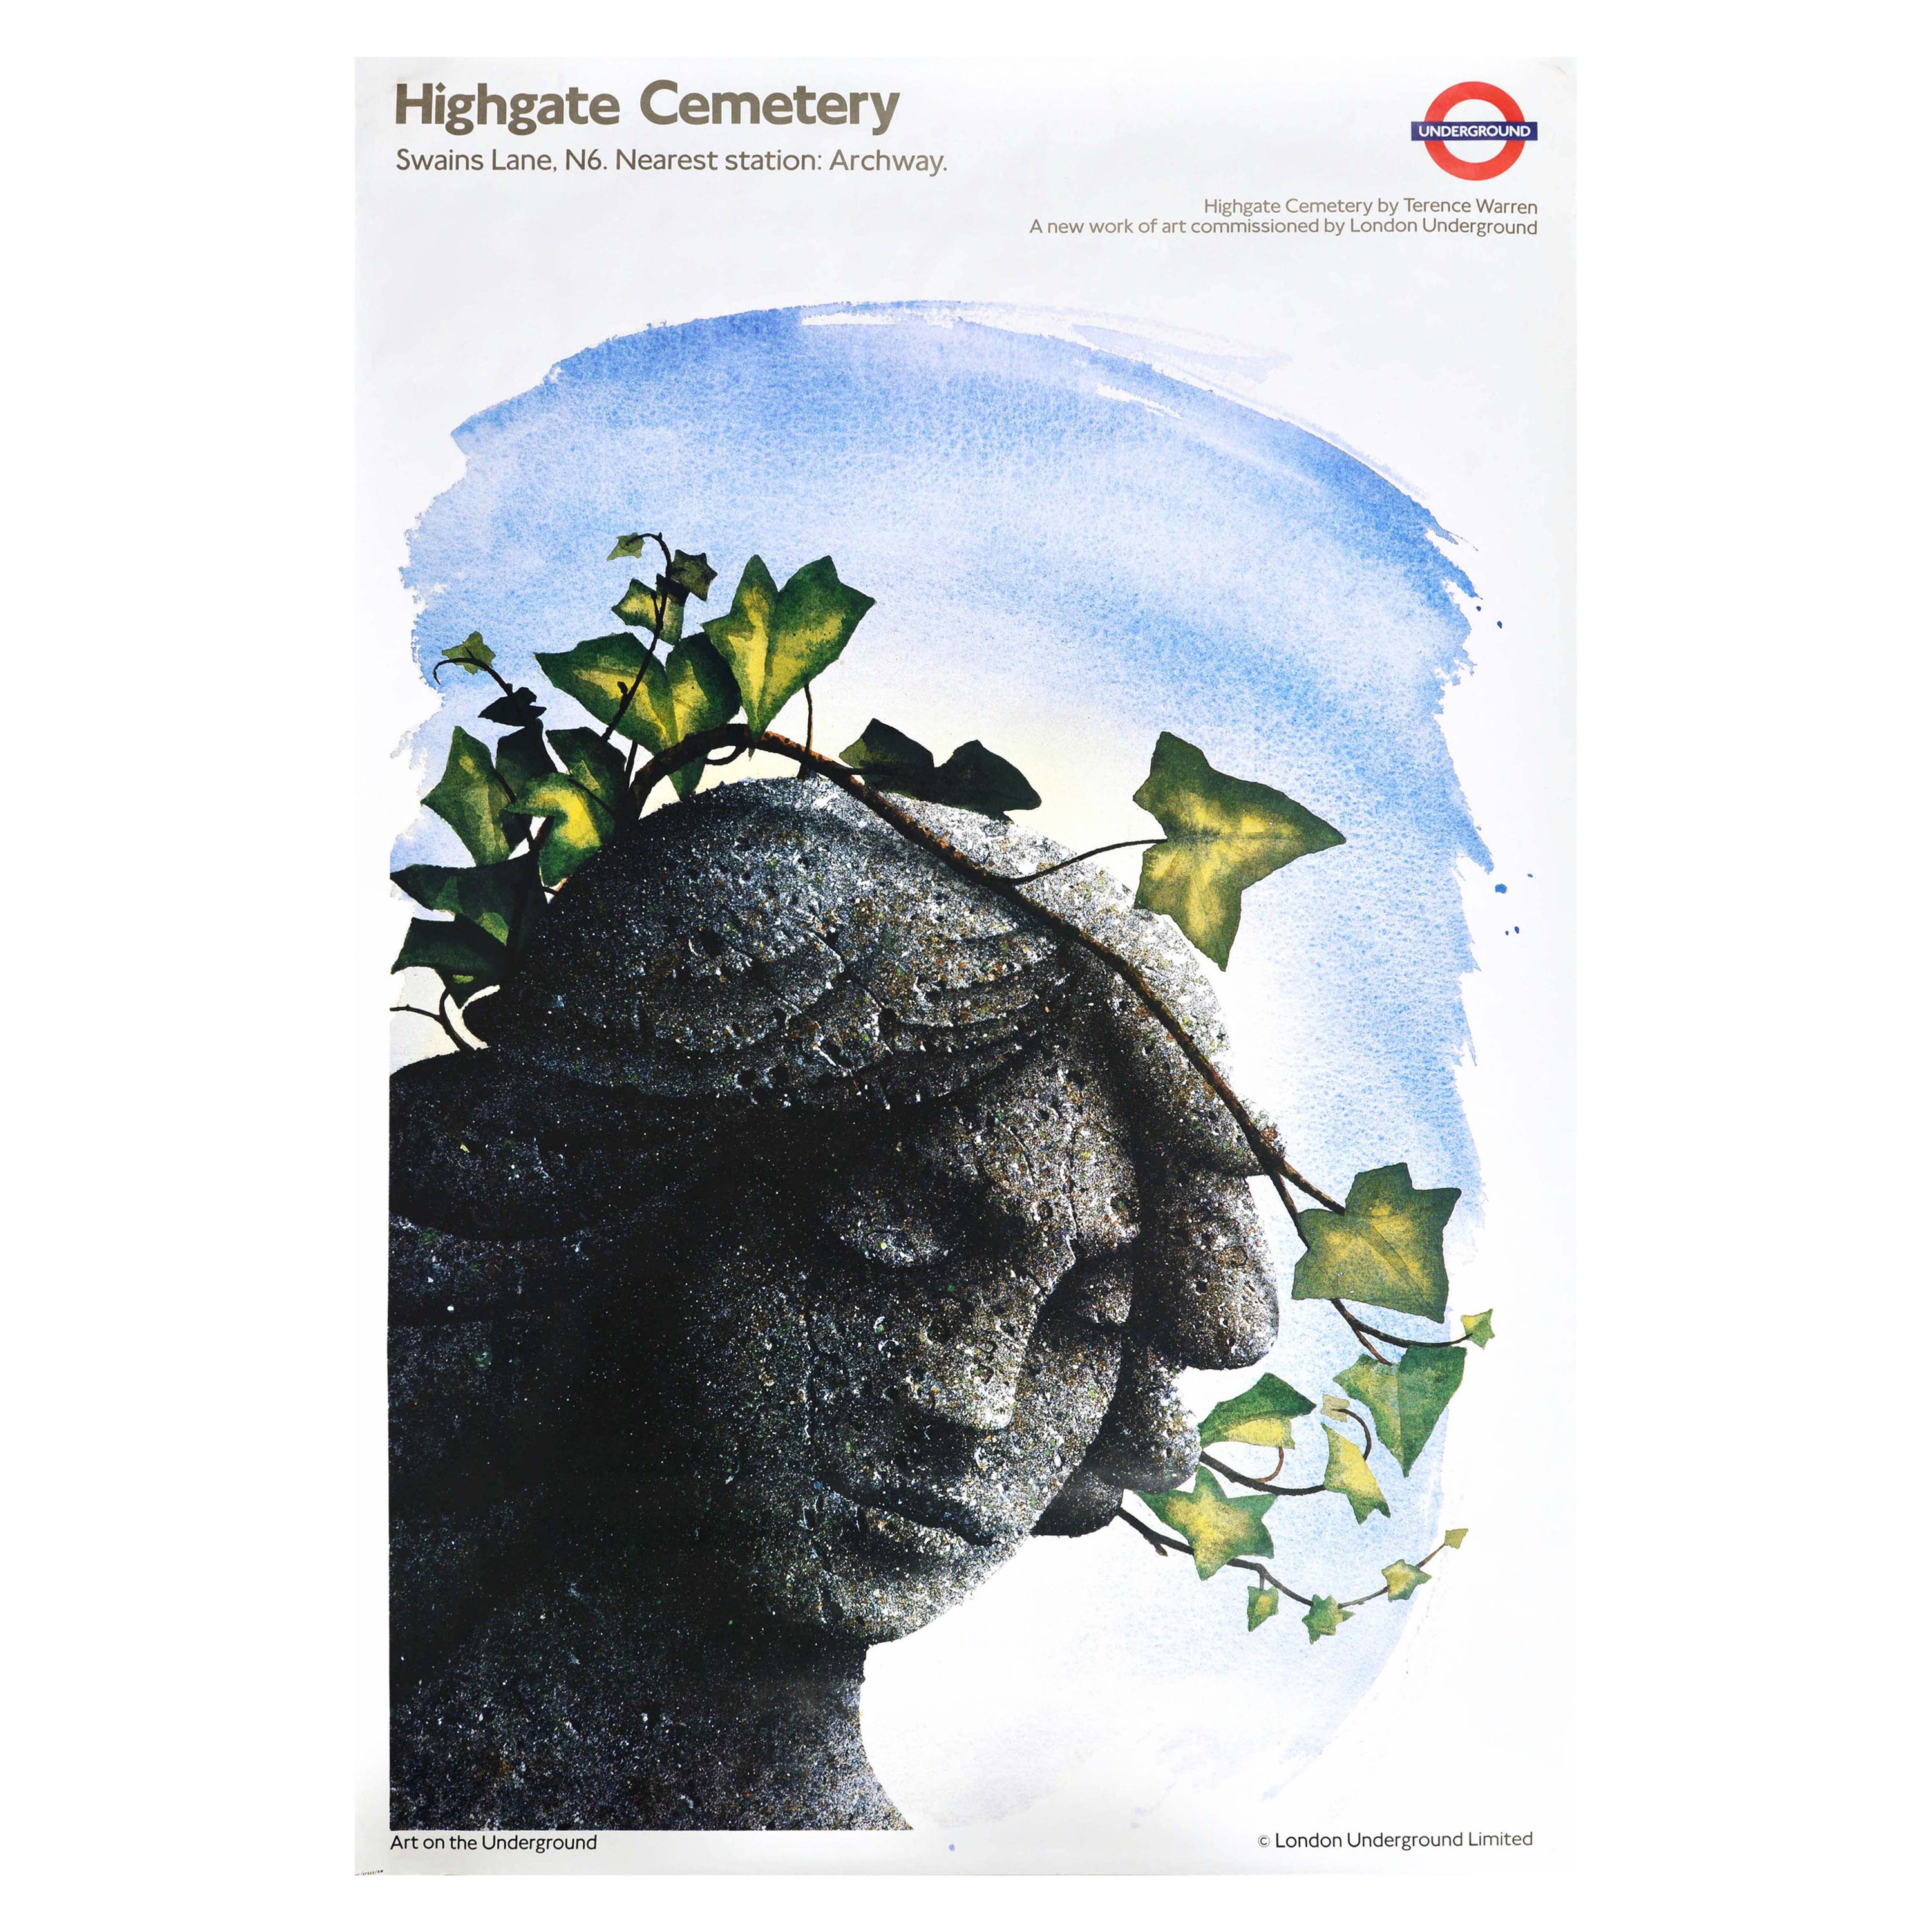 Affiche vintage d'origine du métro de Londres représentant le cimetière de Highgate, pierre angulaire